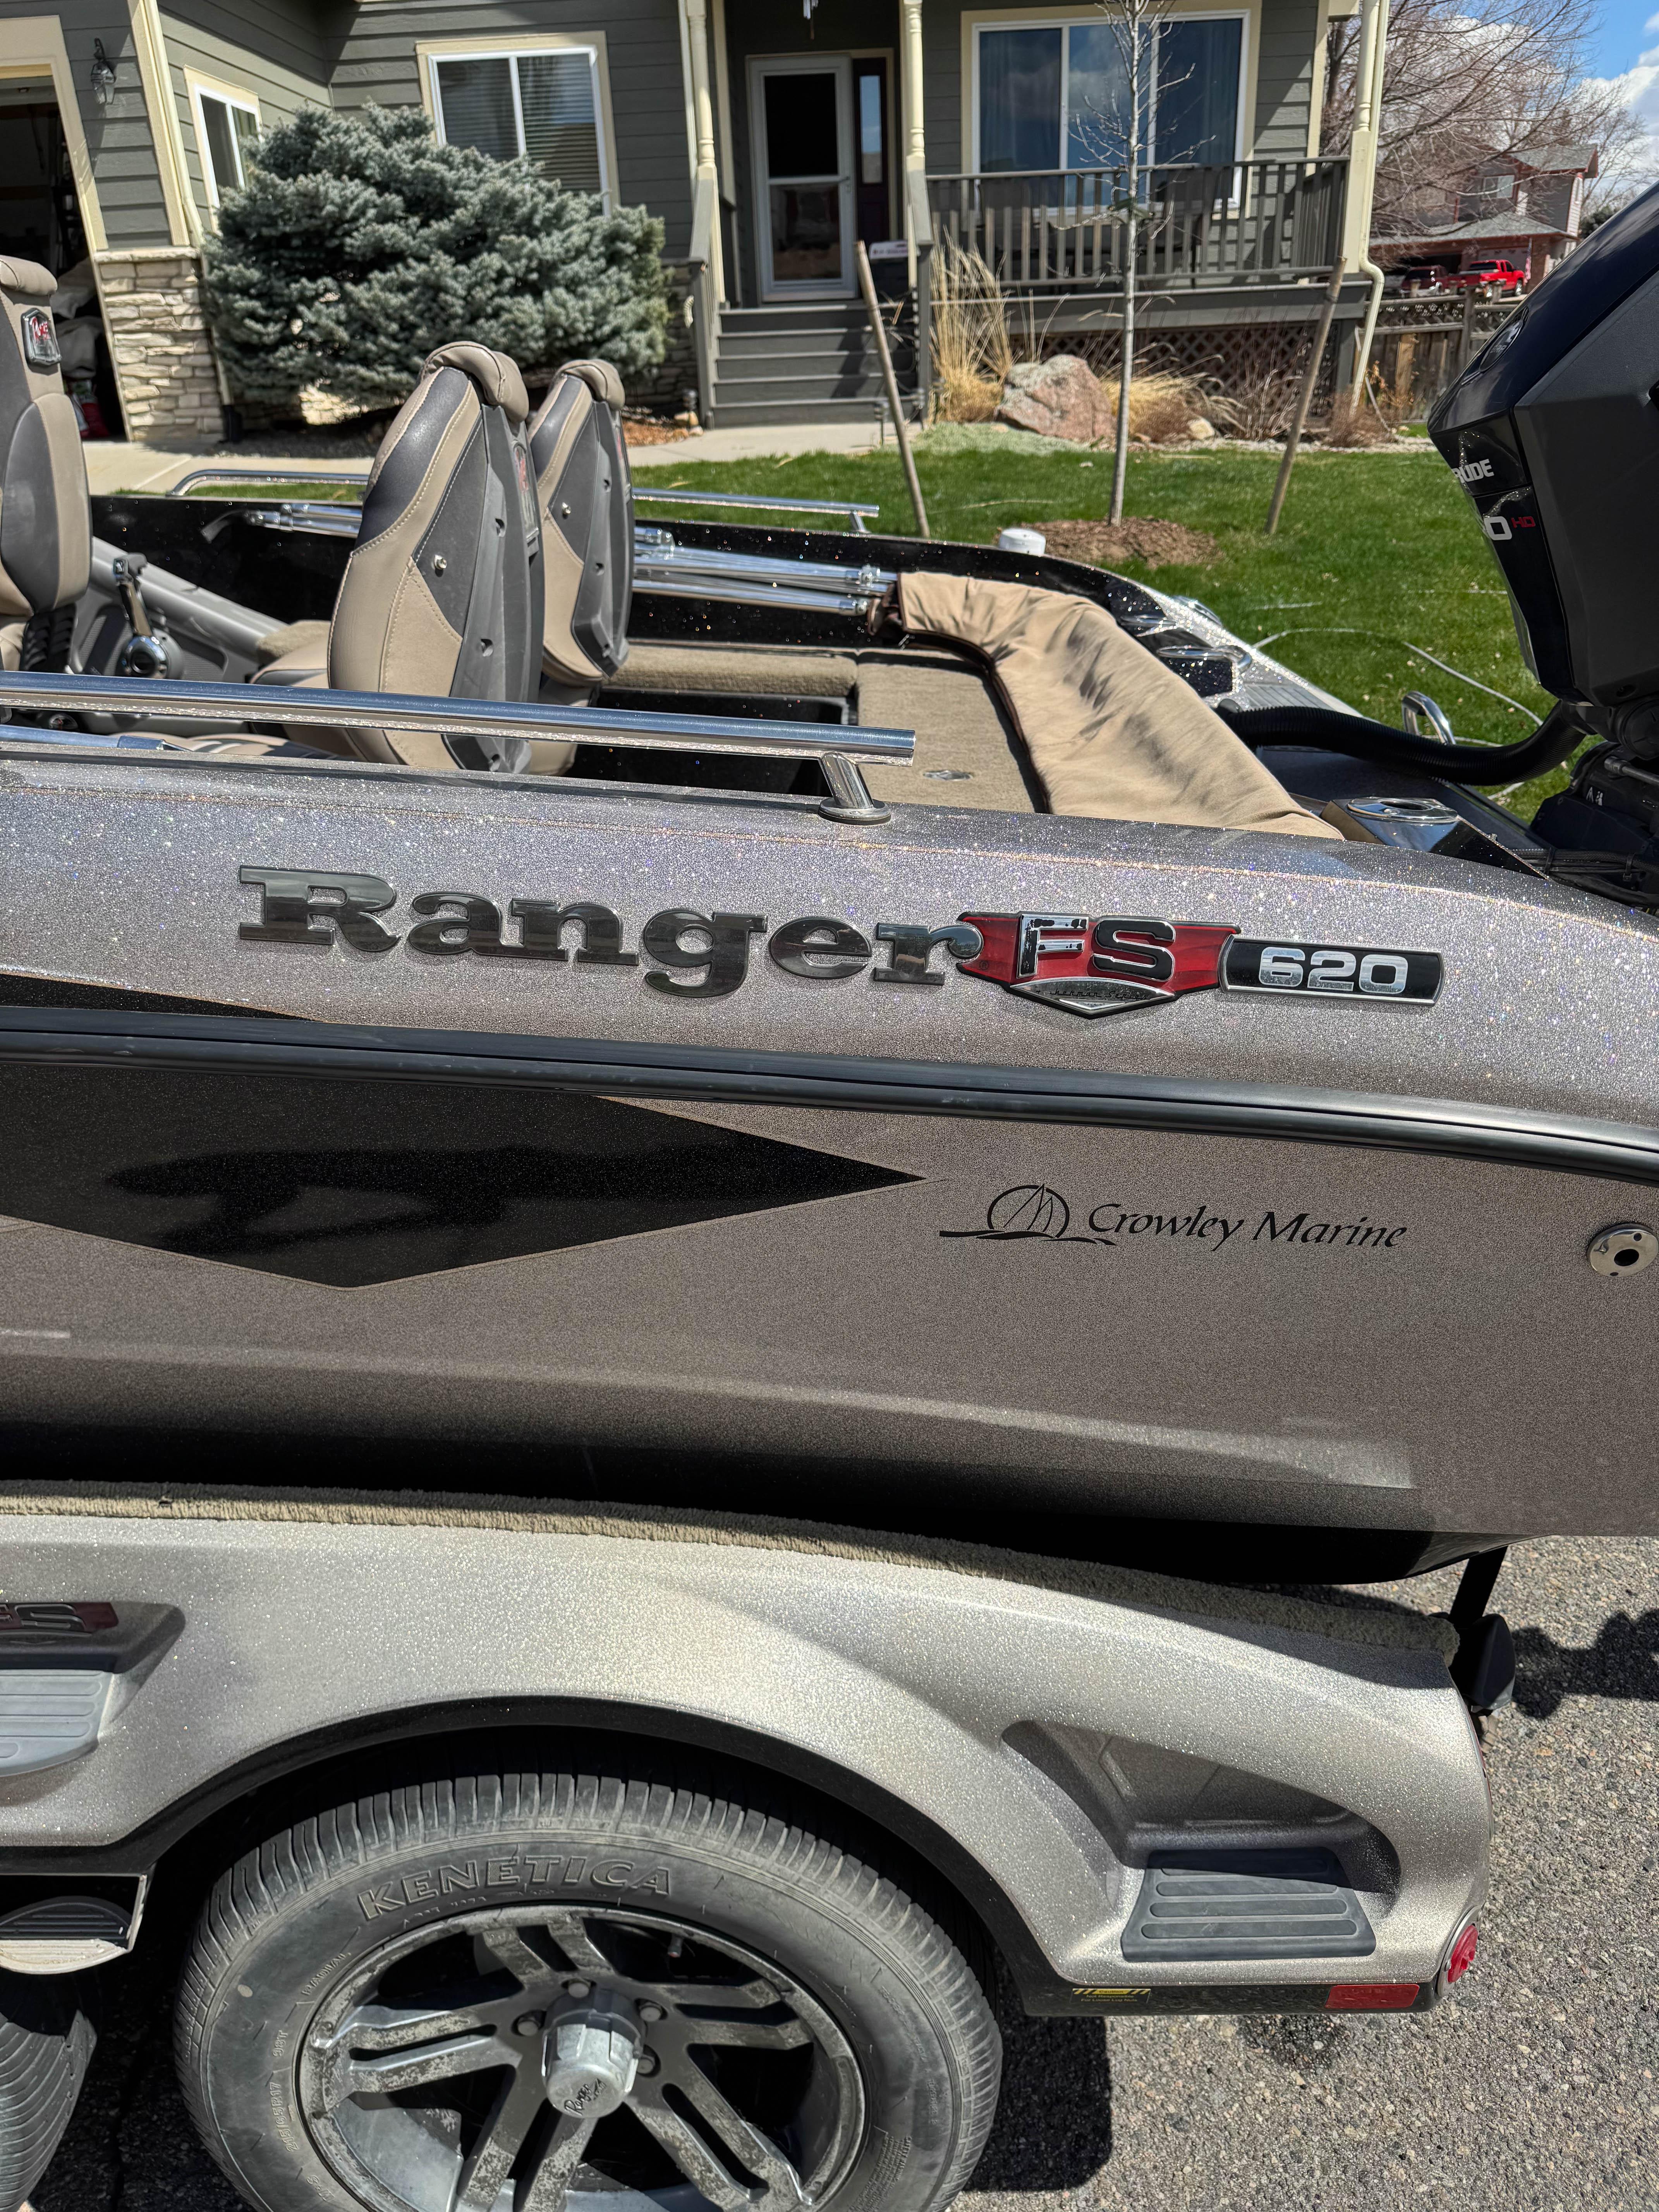 2018 Ranger 620FS Fisherman